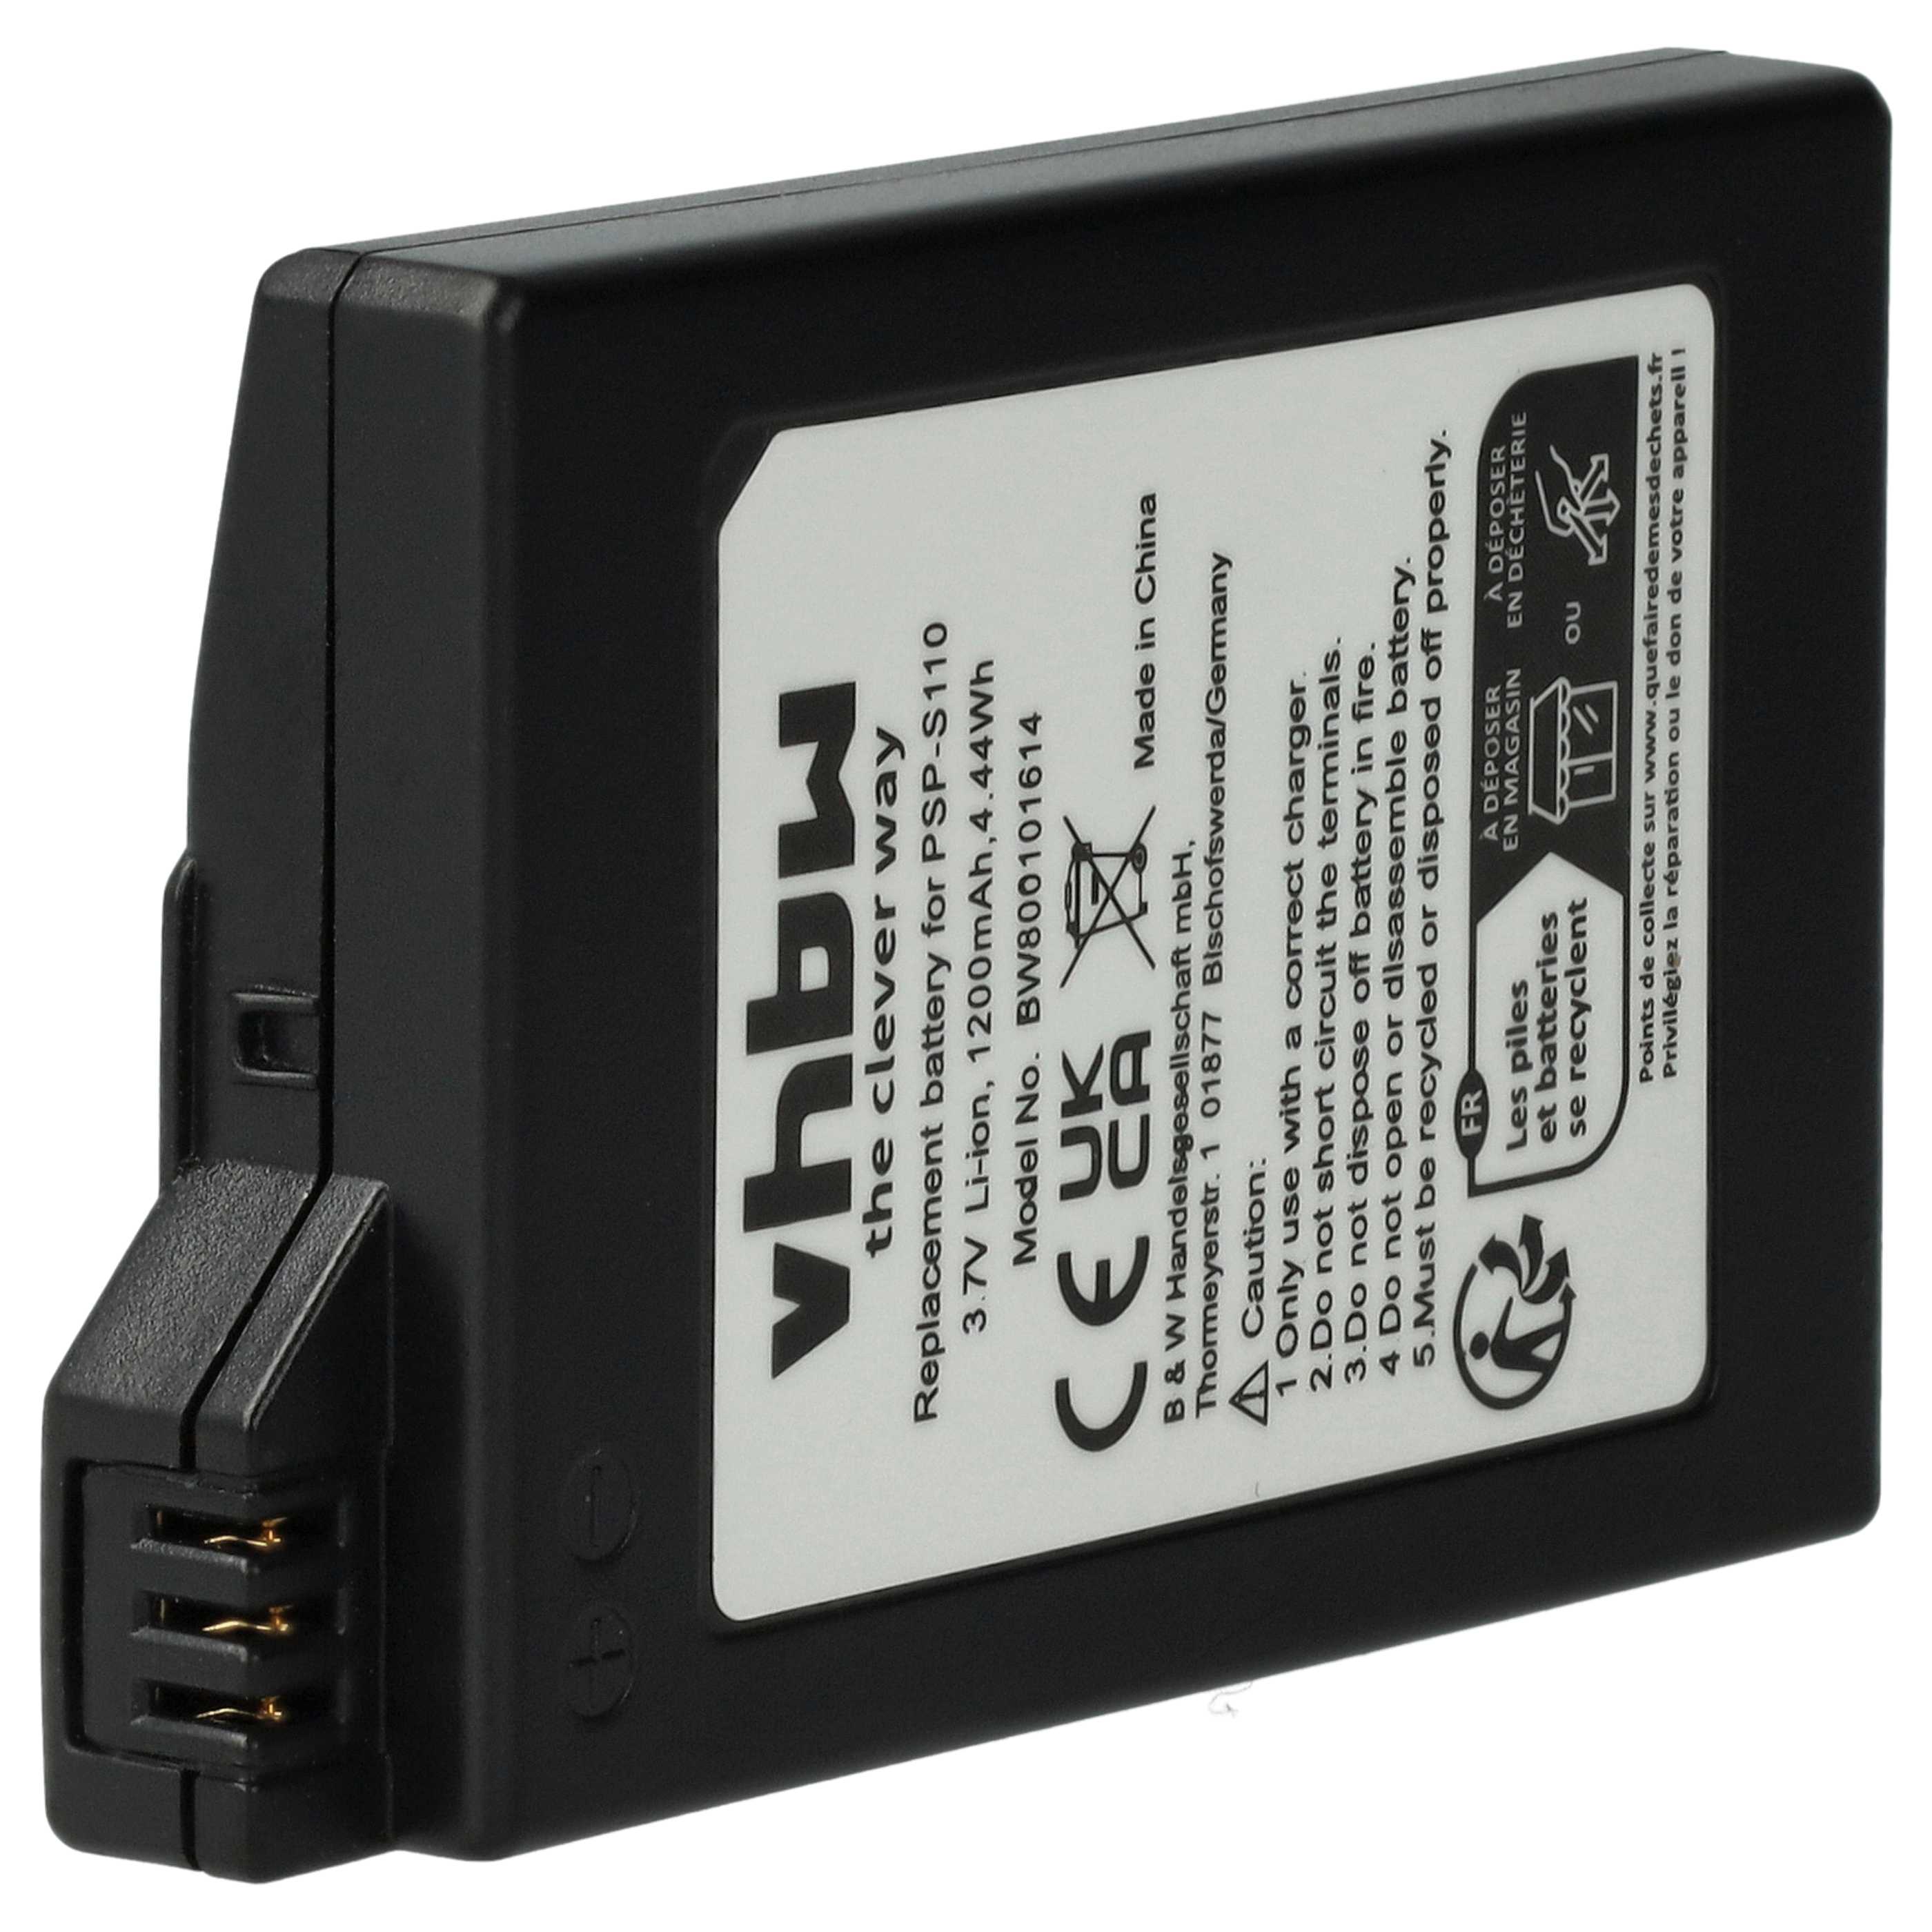 Batterie remplace Sony PSP-S110 remplace Sony PSP-S110 pour console de jeux - 1200mAh, 3,7V